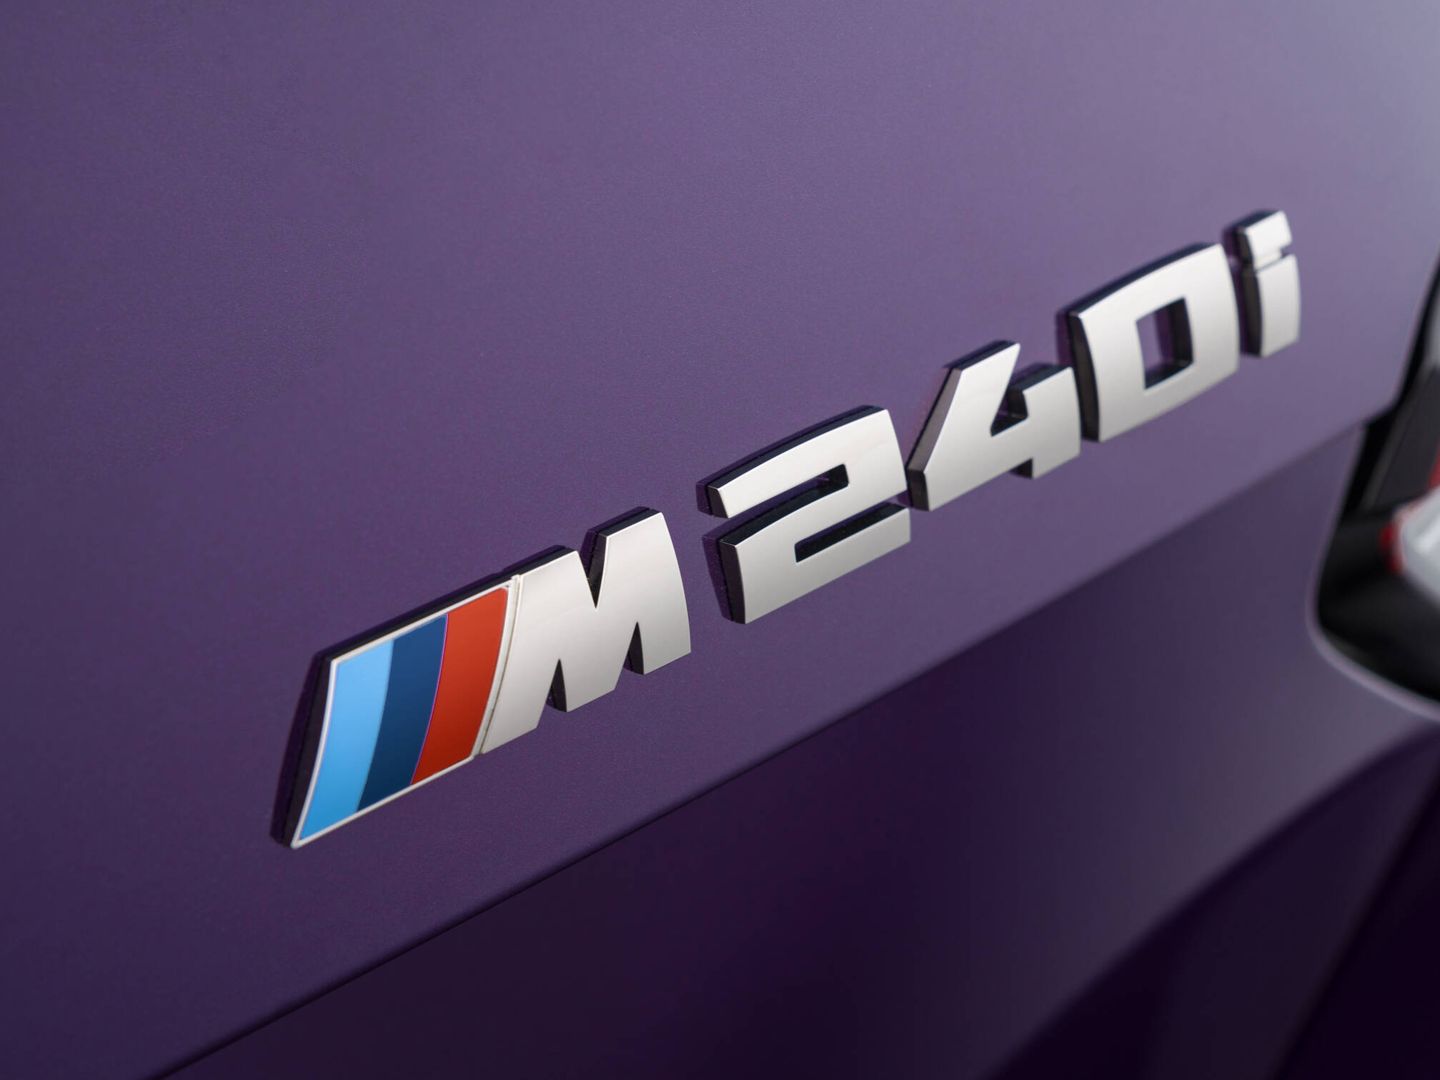 El M240i xDrive cuesta 69.900 euros y aporta 374 CV, tracción total y chasis personalizado.